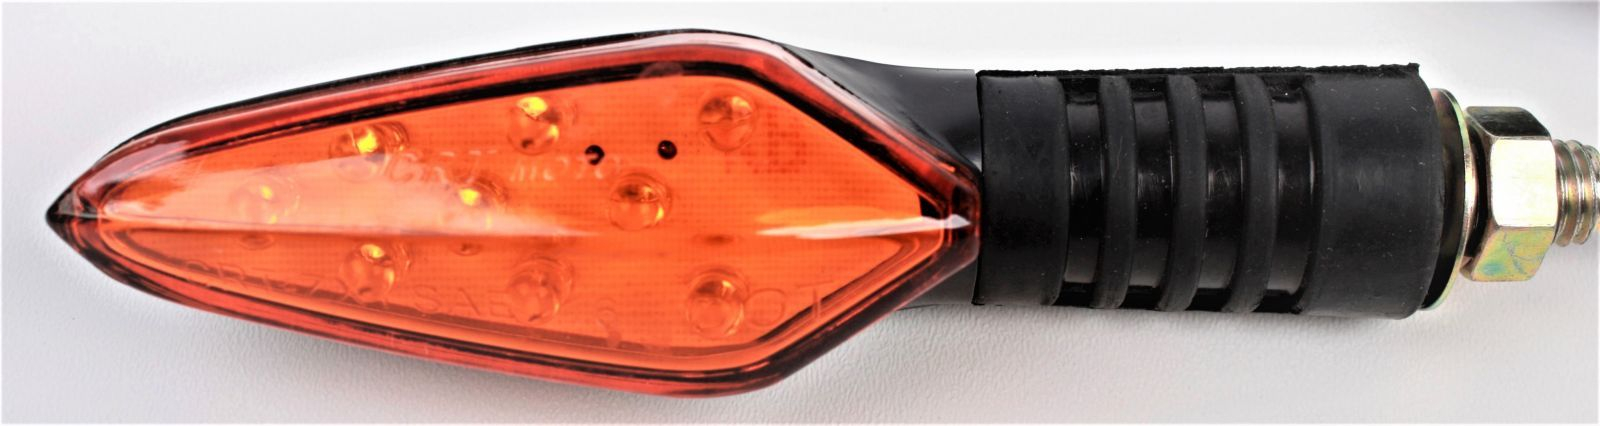 RCskladem Eco Highway diodový blinkr ARTR 1:1 EH002 oranžový